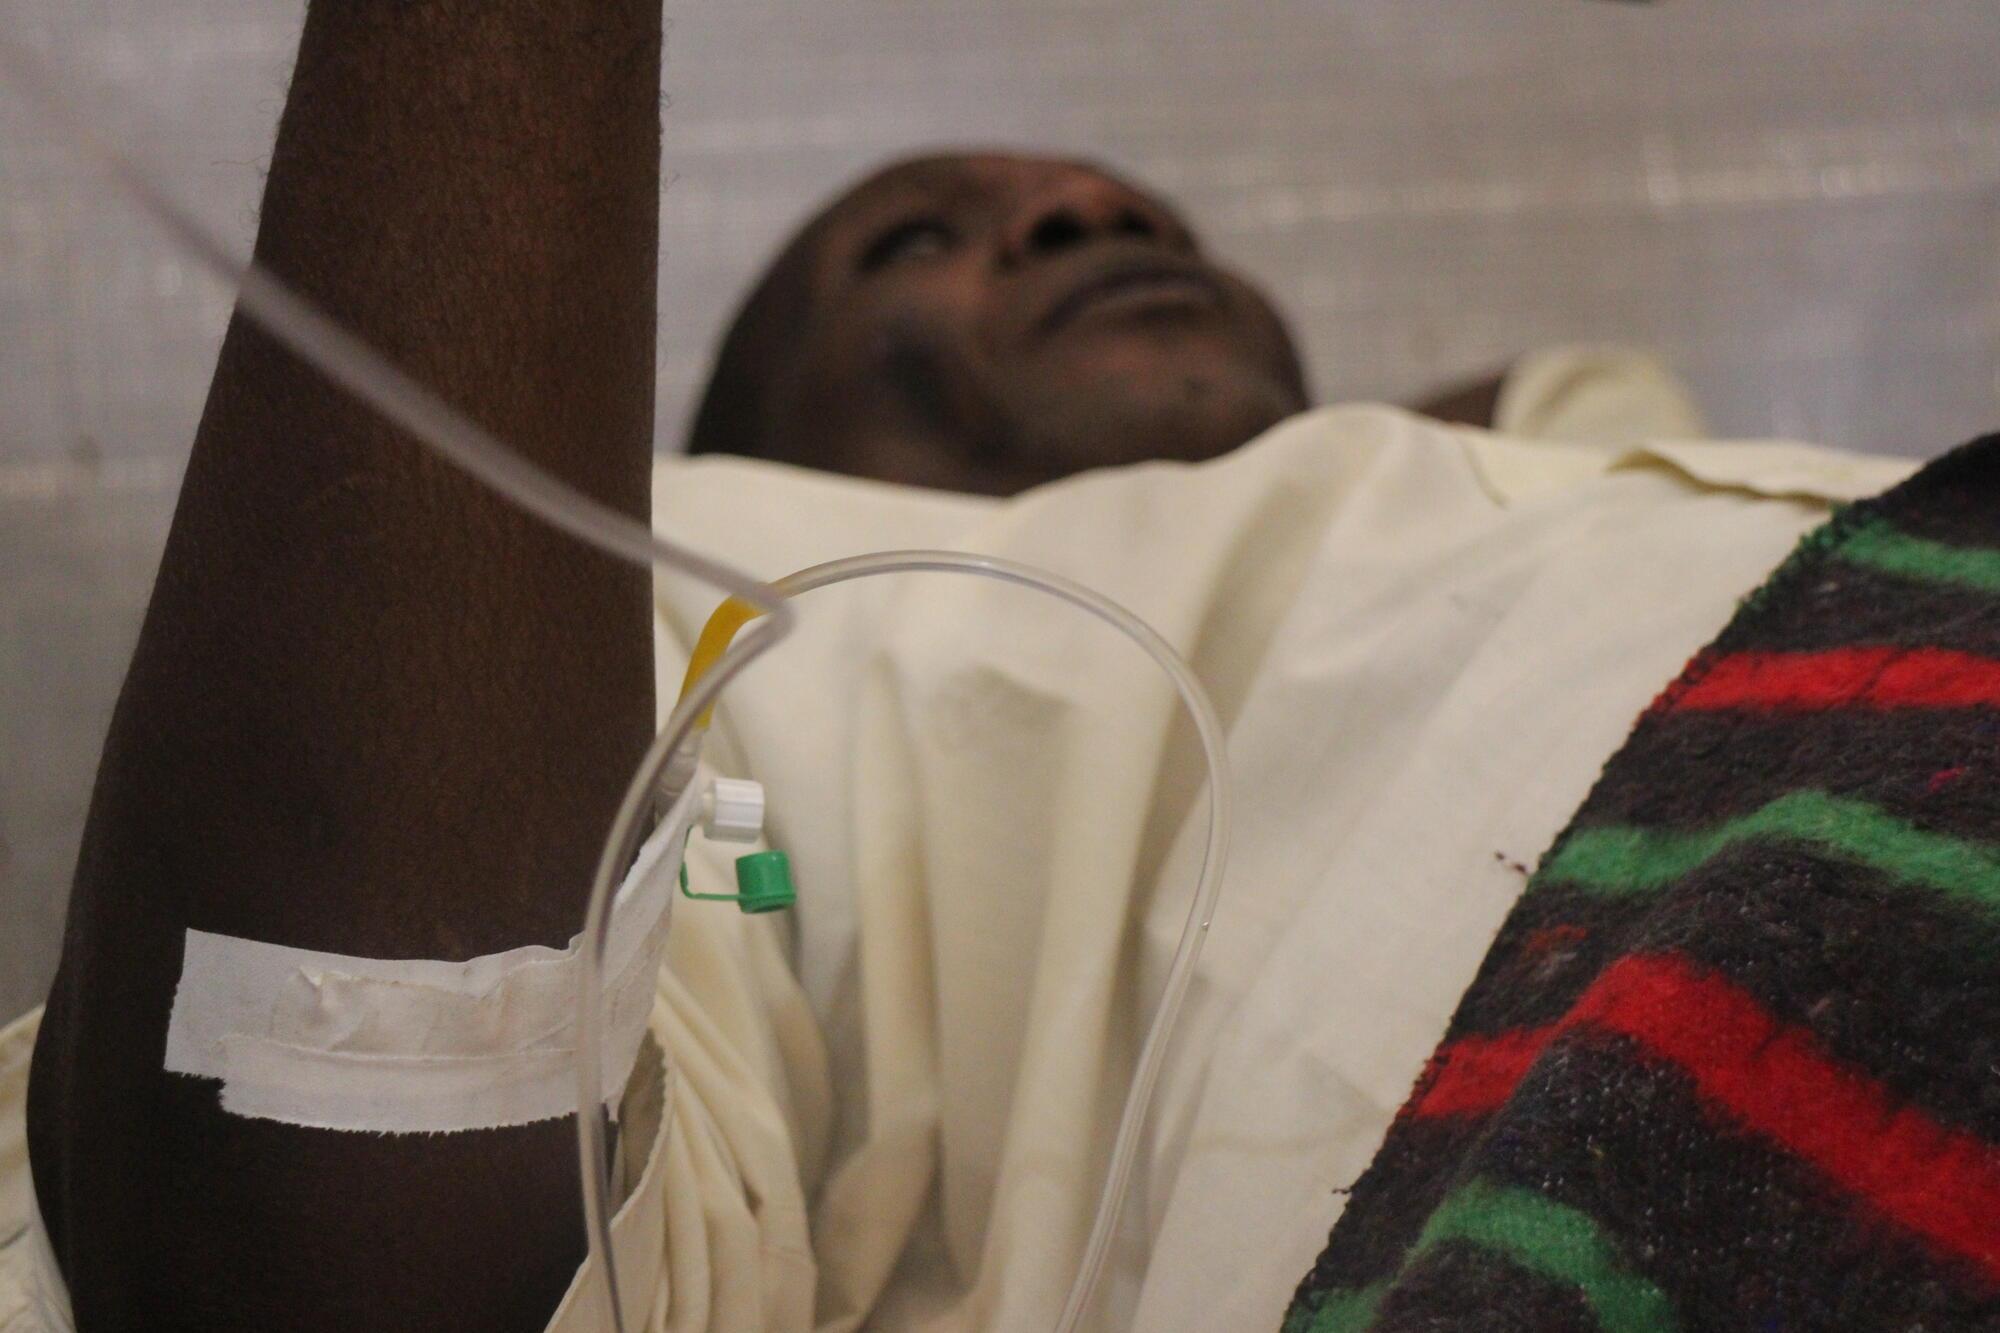 Une épidémie de Choléra déclarée officiellement dans le Haut-Katanga au Sud-est de la RDC